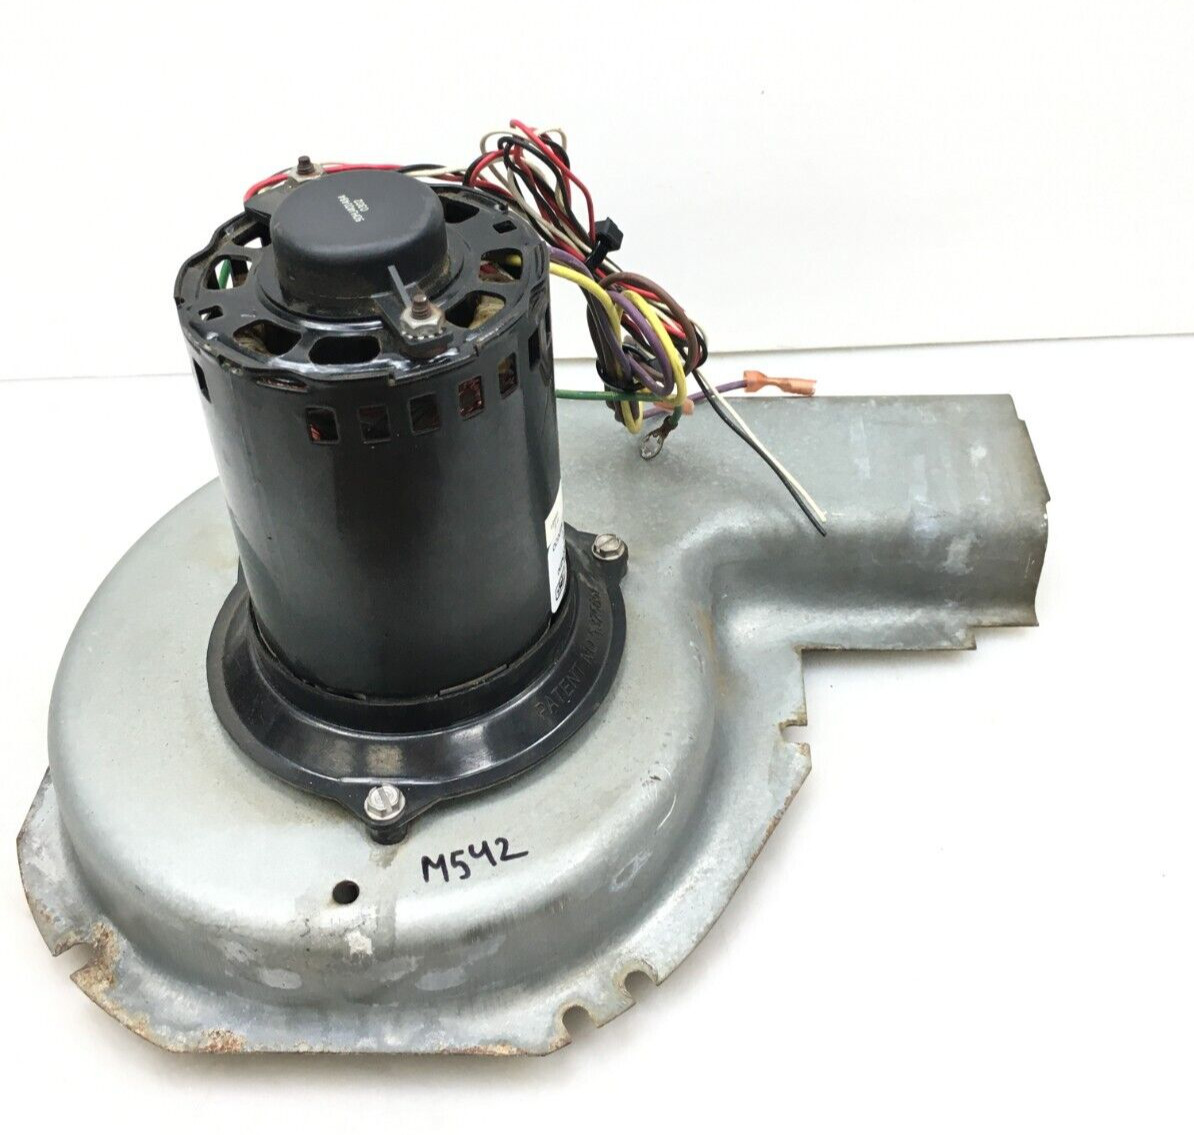 Magnetek JF1H112N Inducer Blower Motor Assembly HC30CK230 208/230V used #M542